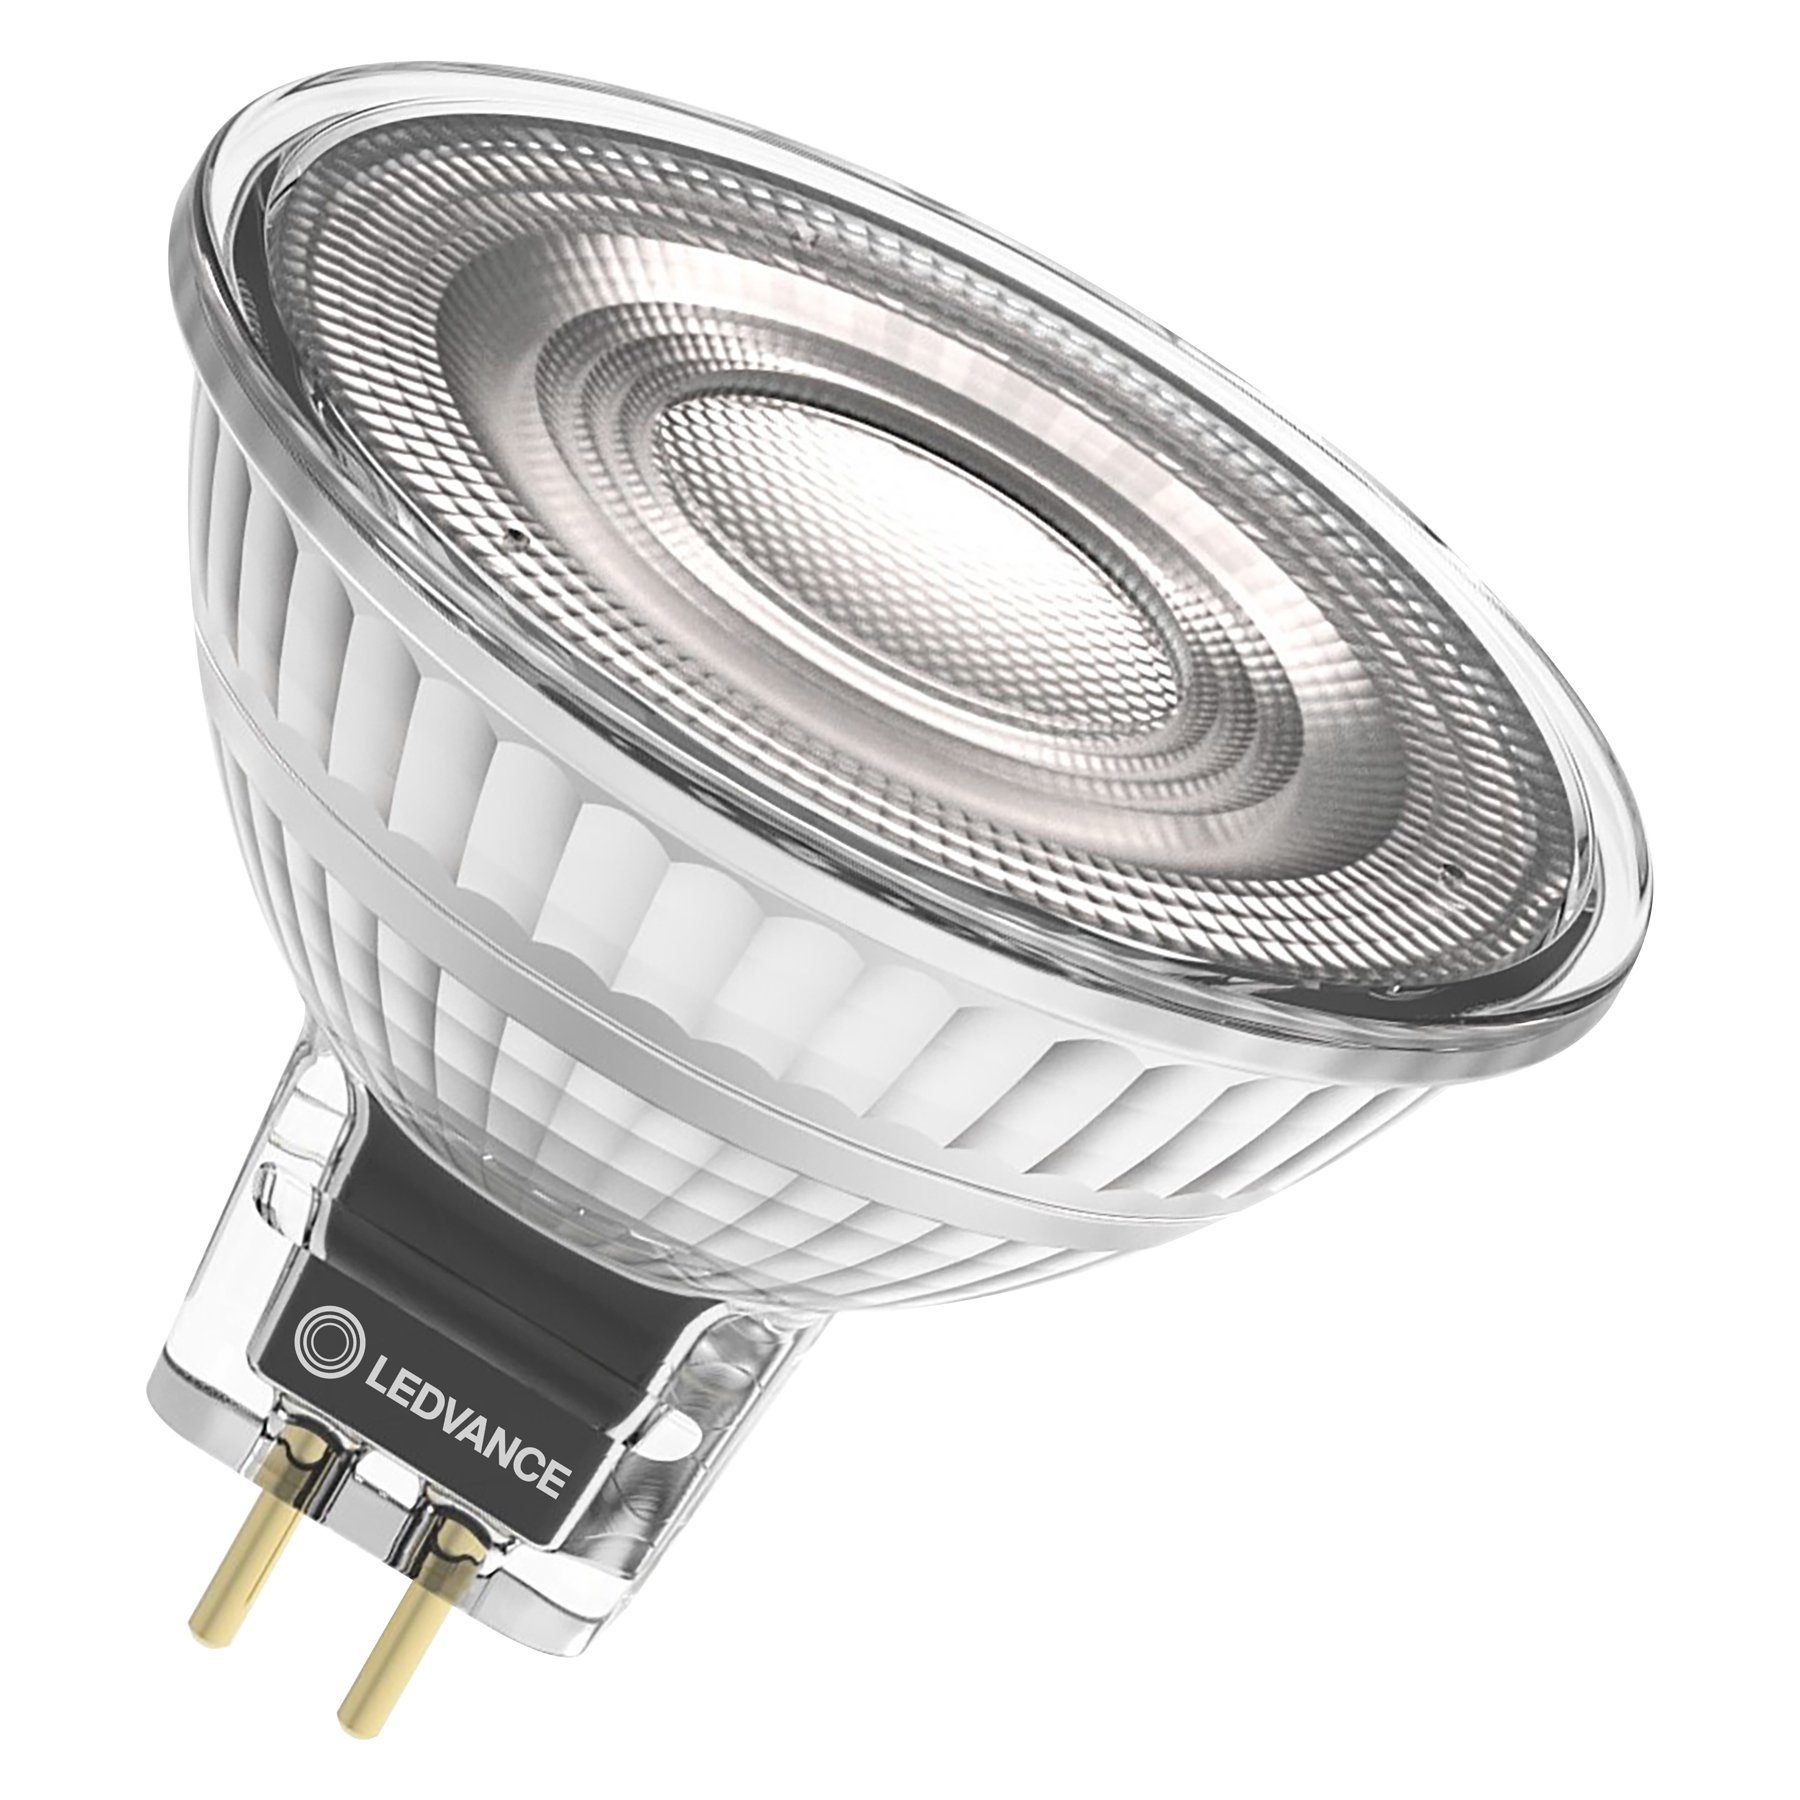 Ledvance LED-Leuchtmittel LED MR16 DIM P, GU 5,3, 1 St., 927/930/940 je nach Variante, Warm weiß/Kalt weiß je nach Variante, Geringer Wartungsaufwand durch lange Lebensdauer